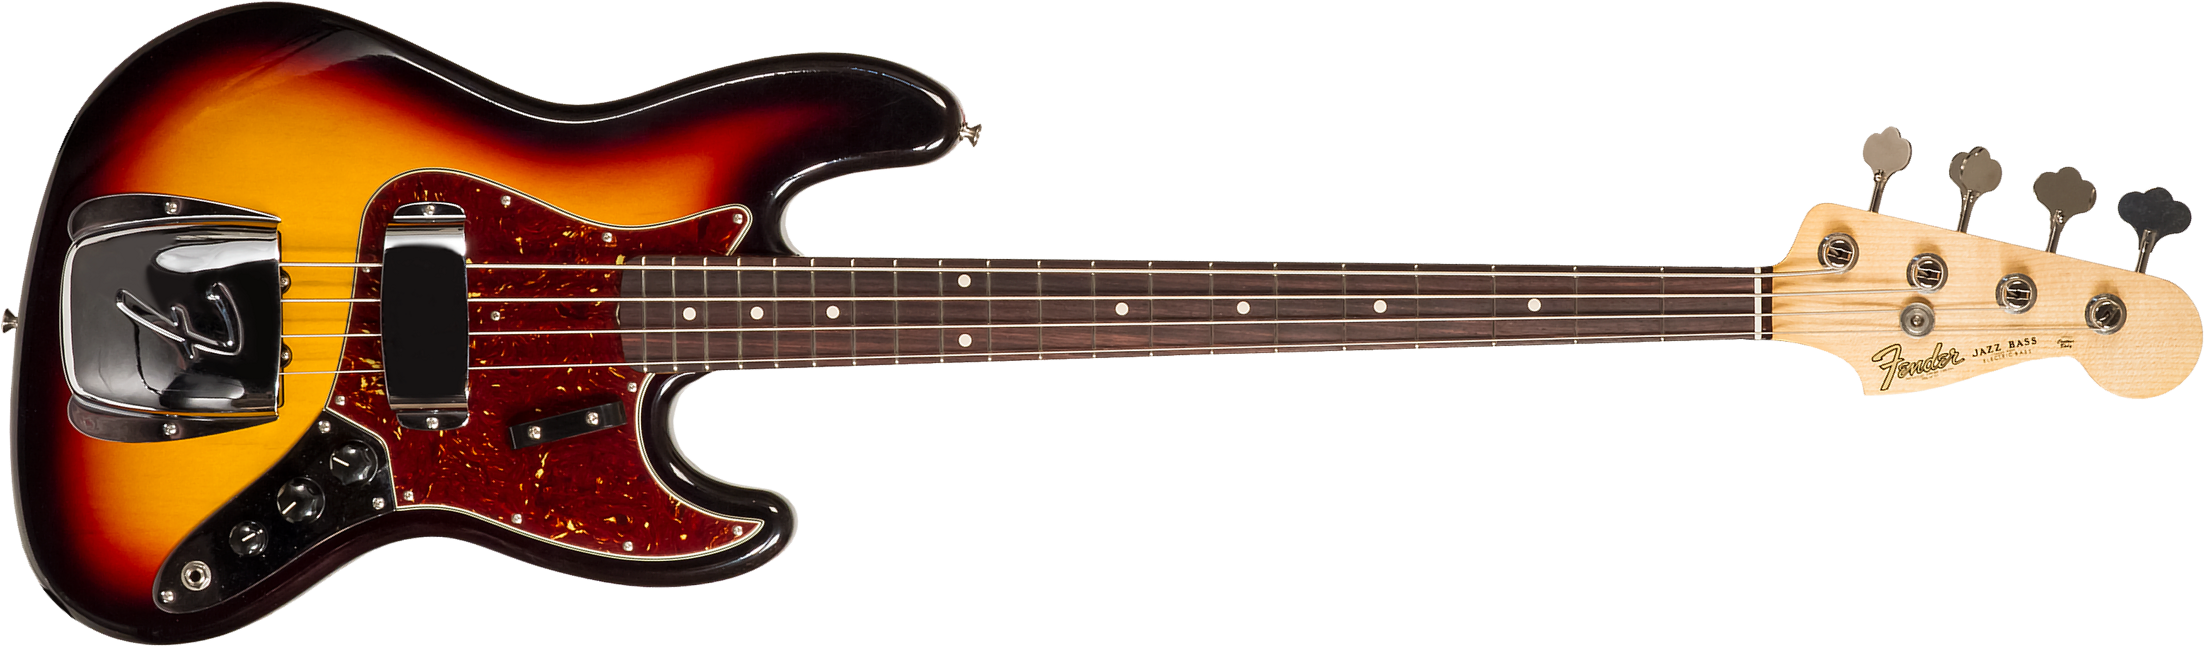 Fender Custom Shop Jazz Bass 1964 Rw #r129293 - Closet Classic 3-color Sunburst - Solidbody E-bass - Main picture